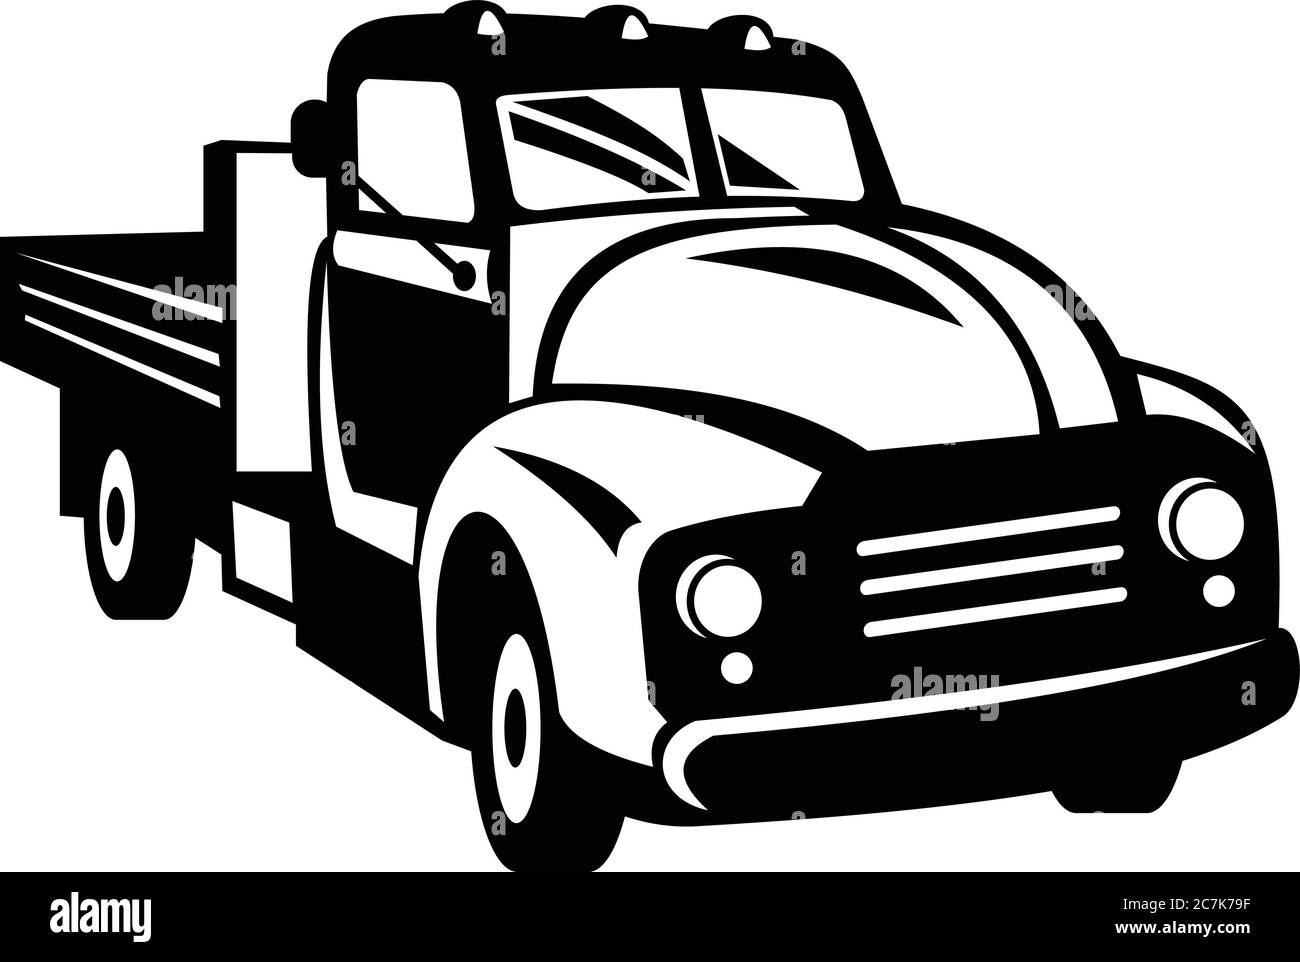 Ilustración de estilo retro woodcut en blanco y negro de un clásico camión de recolección americano con raíles laterales de madera vistos desde delante en ángulo alto en is Ilustración del Vector